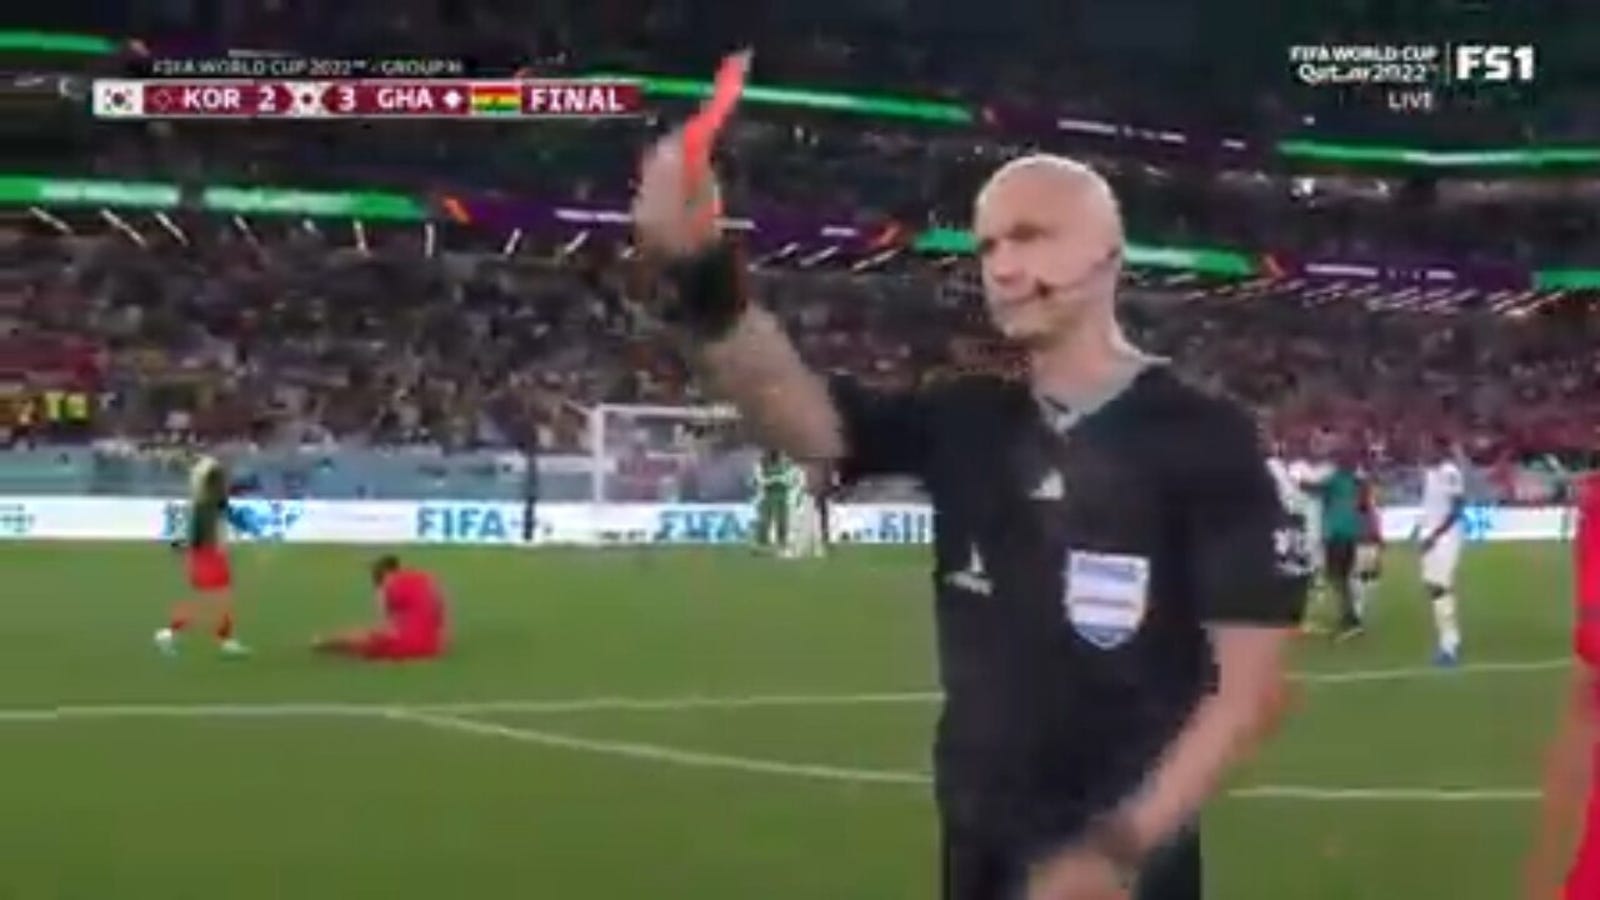 El seleccionador de Corea del Sur, Paulo Bento, mostró una tarjeta roja tras perder 3-2 ante Ghana